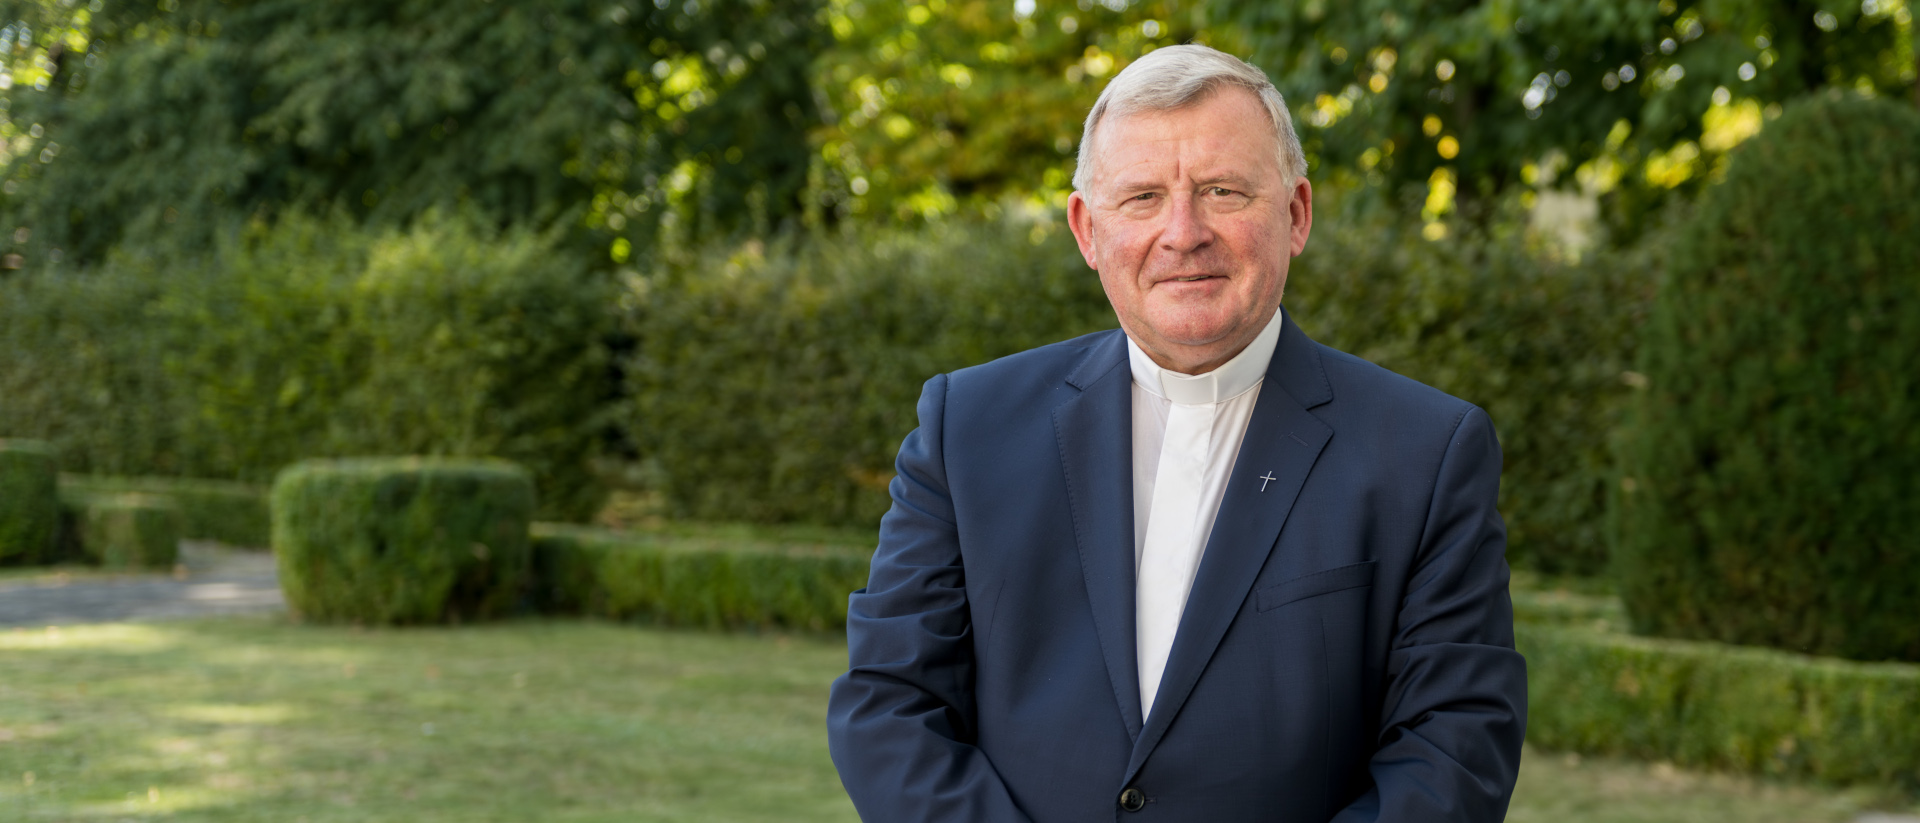 Mgr Josef Stübi, à la tête du conseil de fondation d'Action de Carême | © AED-ACN